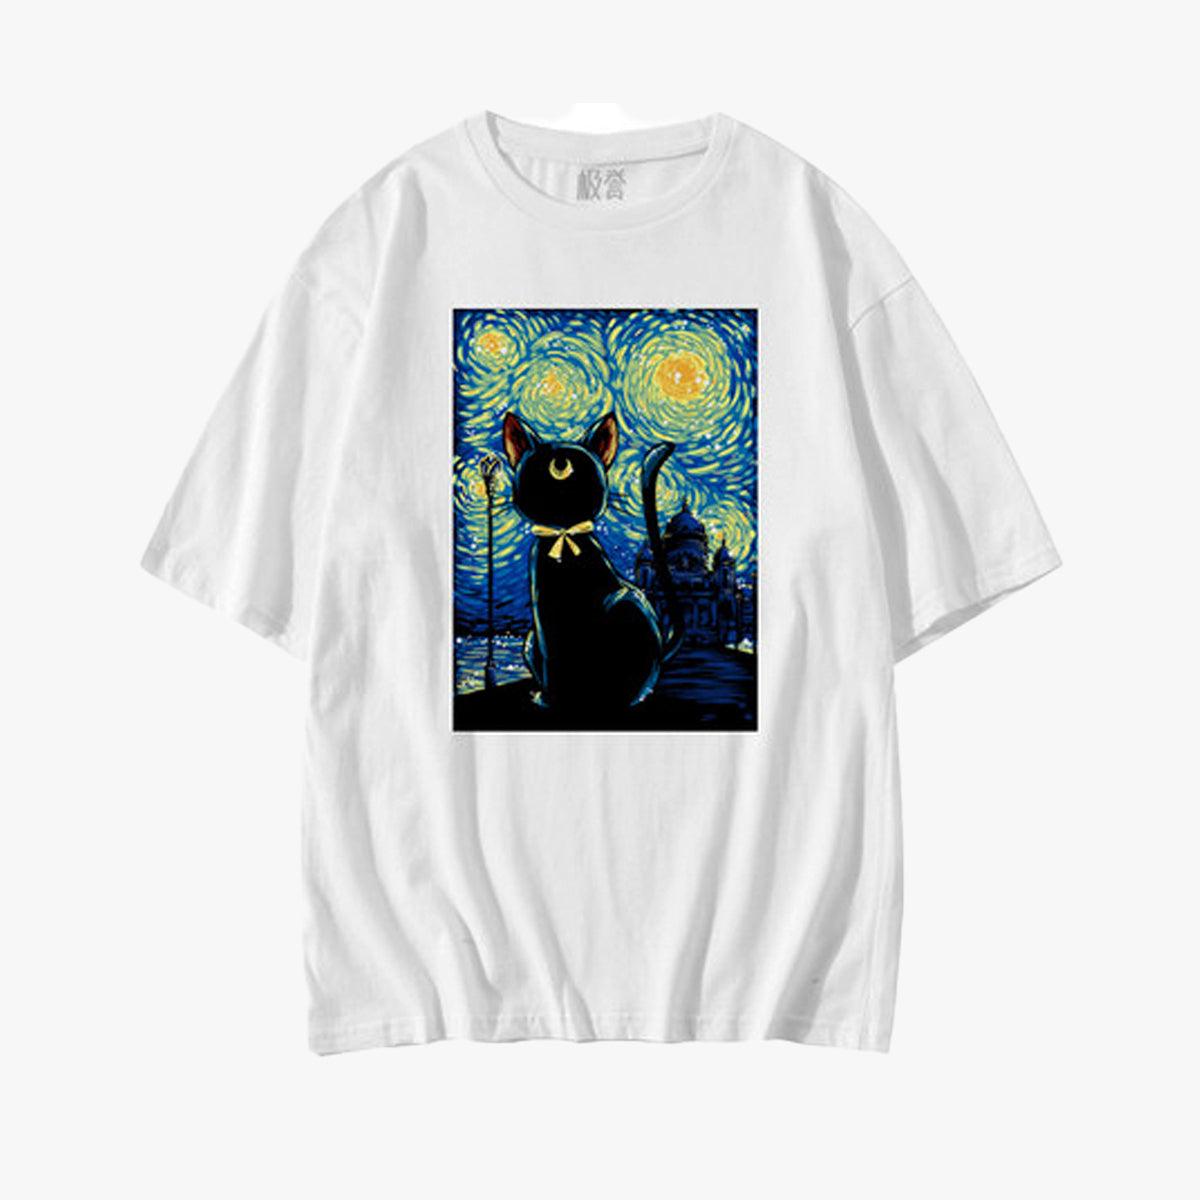 Sailor Luna Cat Van Gogh T-Shirt - Aesthetic Clothes Shop